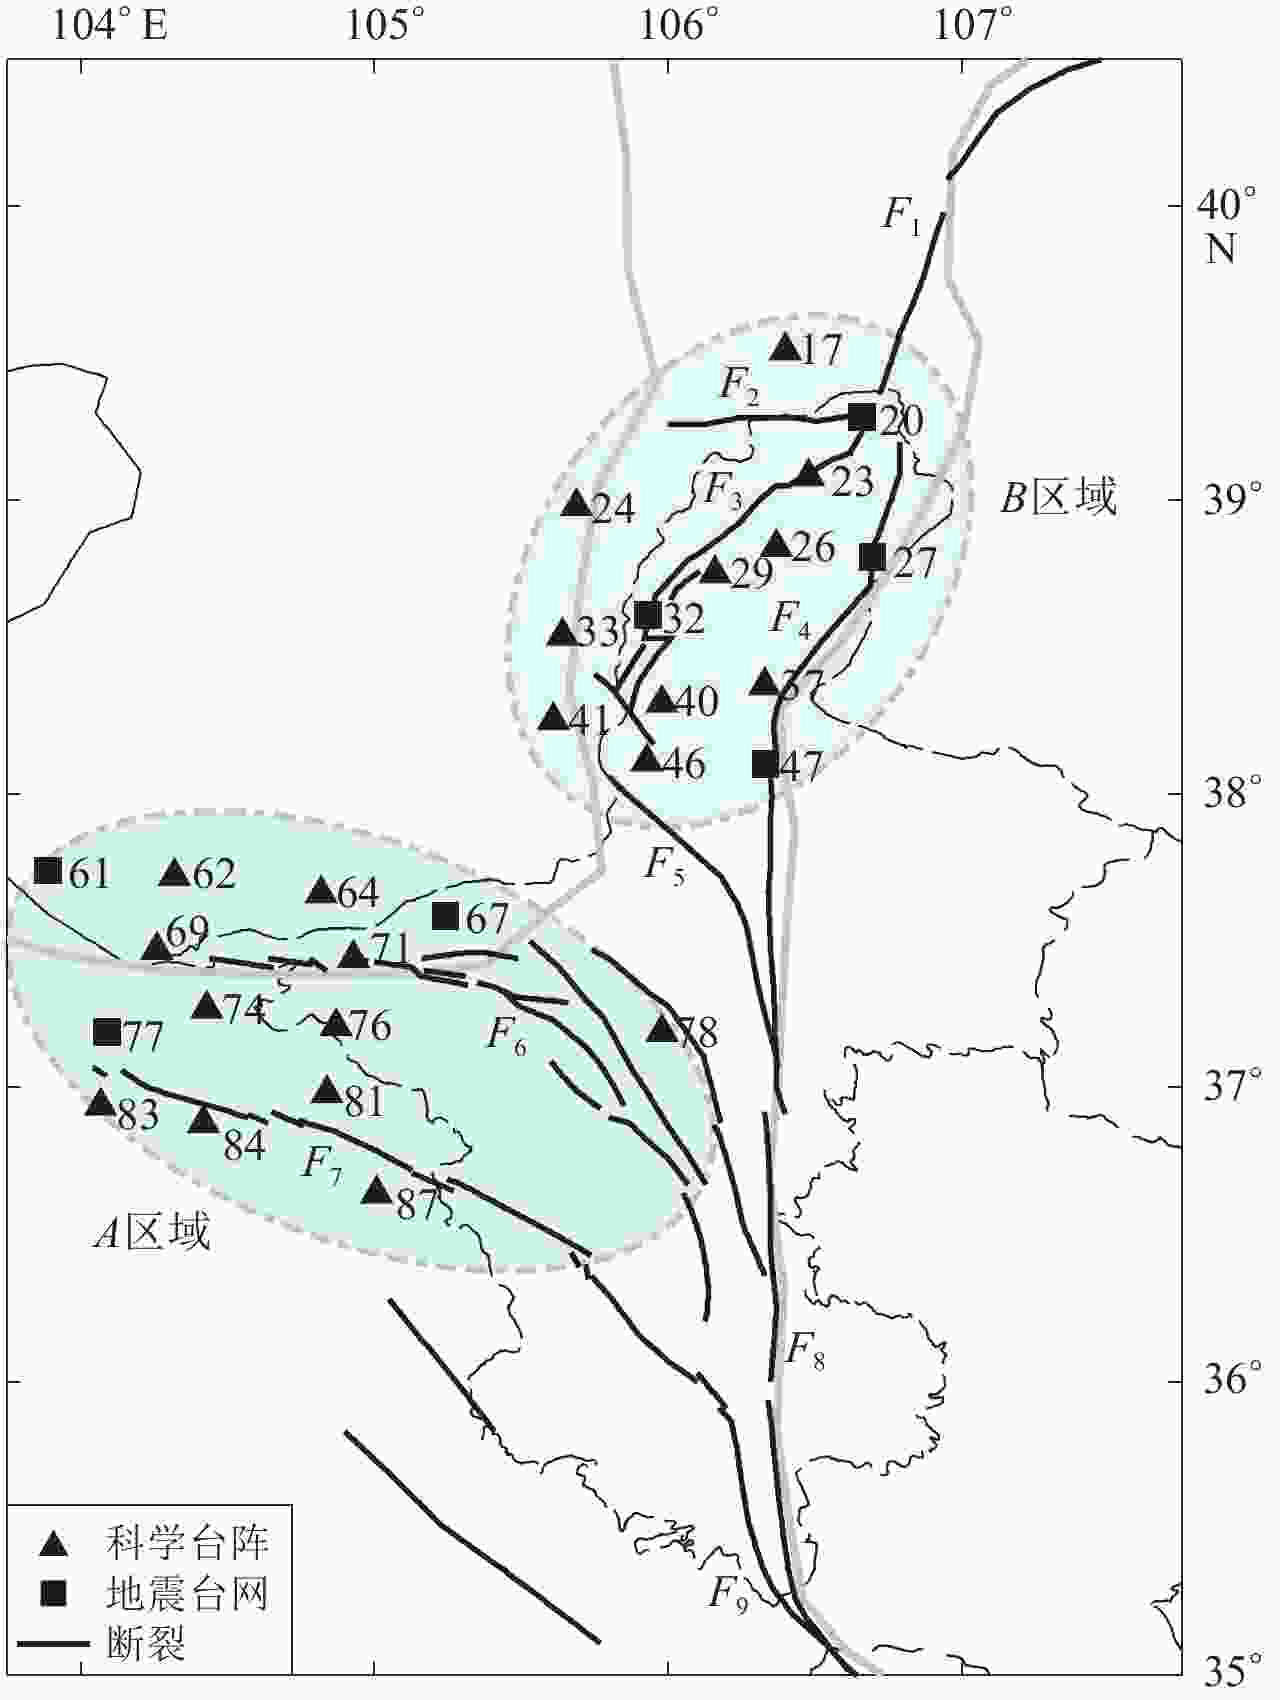 鄂尔多斯地块西缘莫霍面起伏及泊松比分布